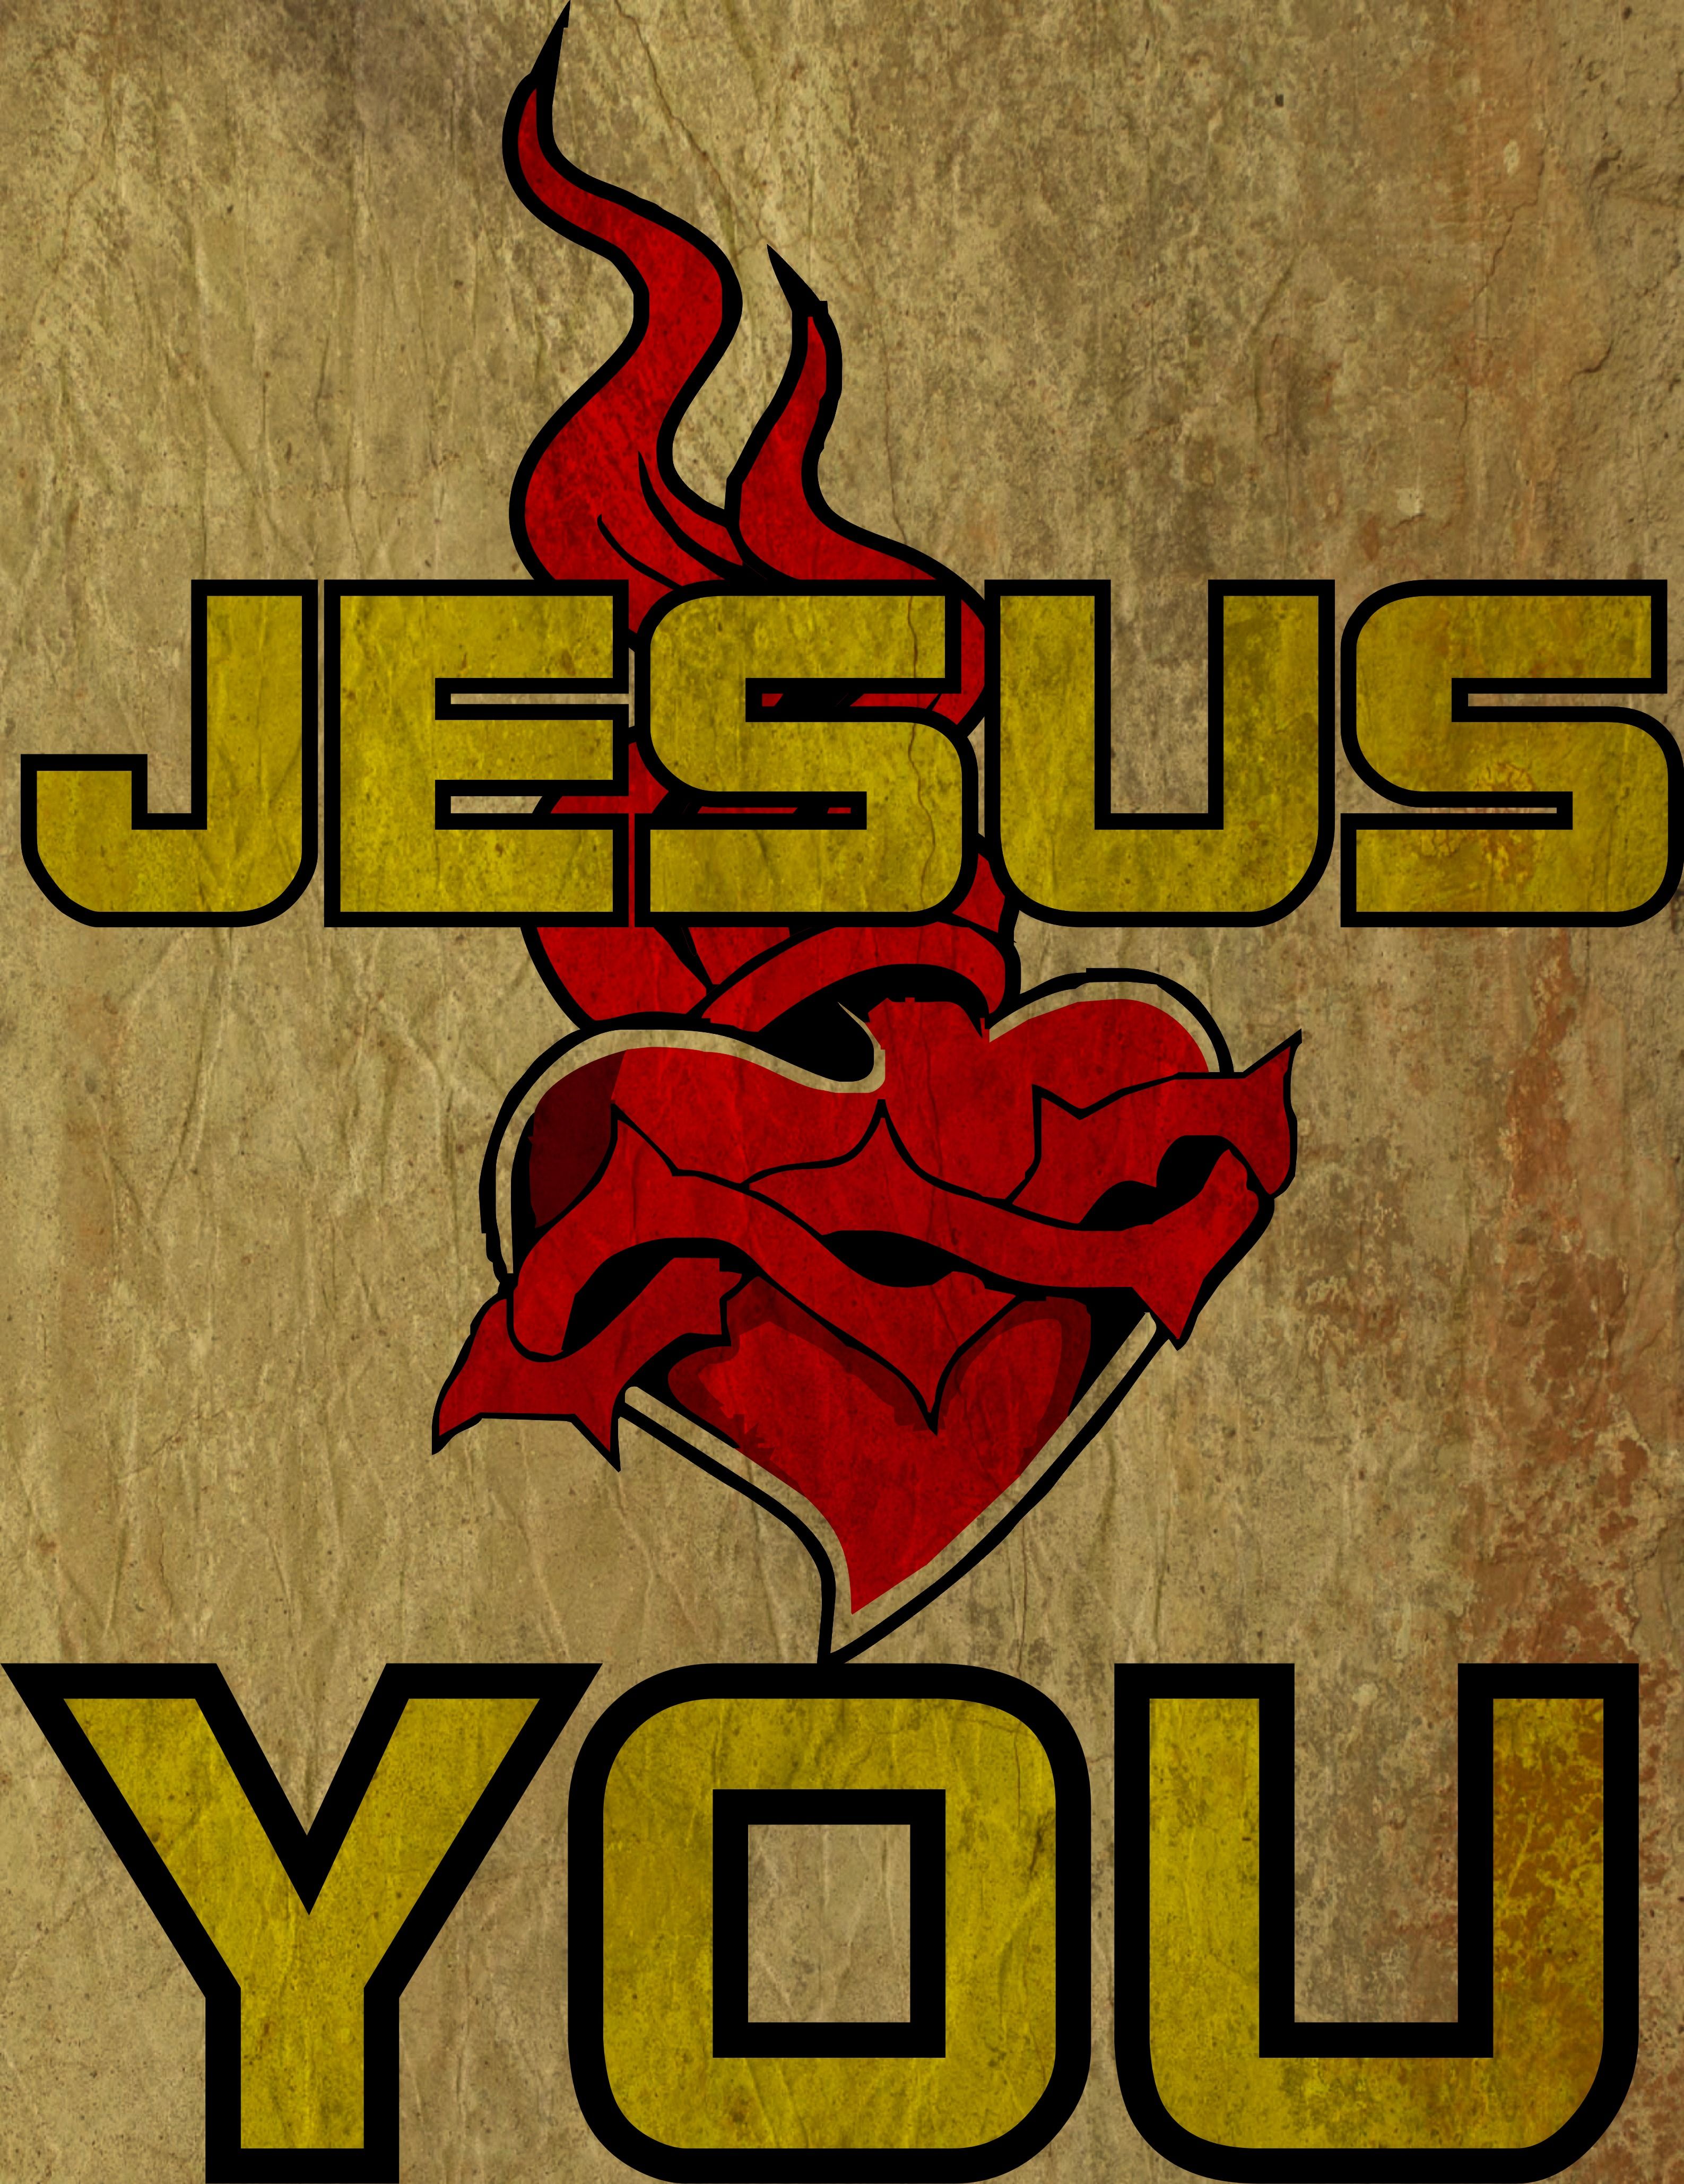 Jesus Christ Wallpaper. Christian Songs Online To Christian Music Online Free Wallpaper And Videos Jesus Loves You Wallpaper